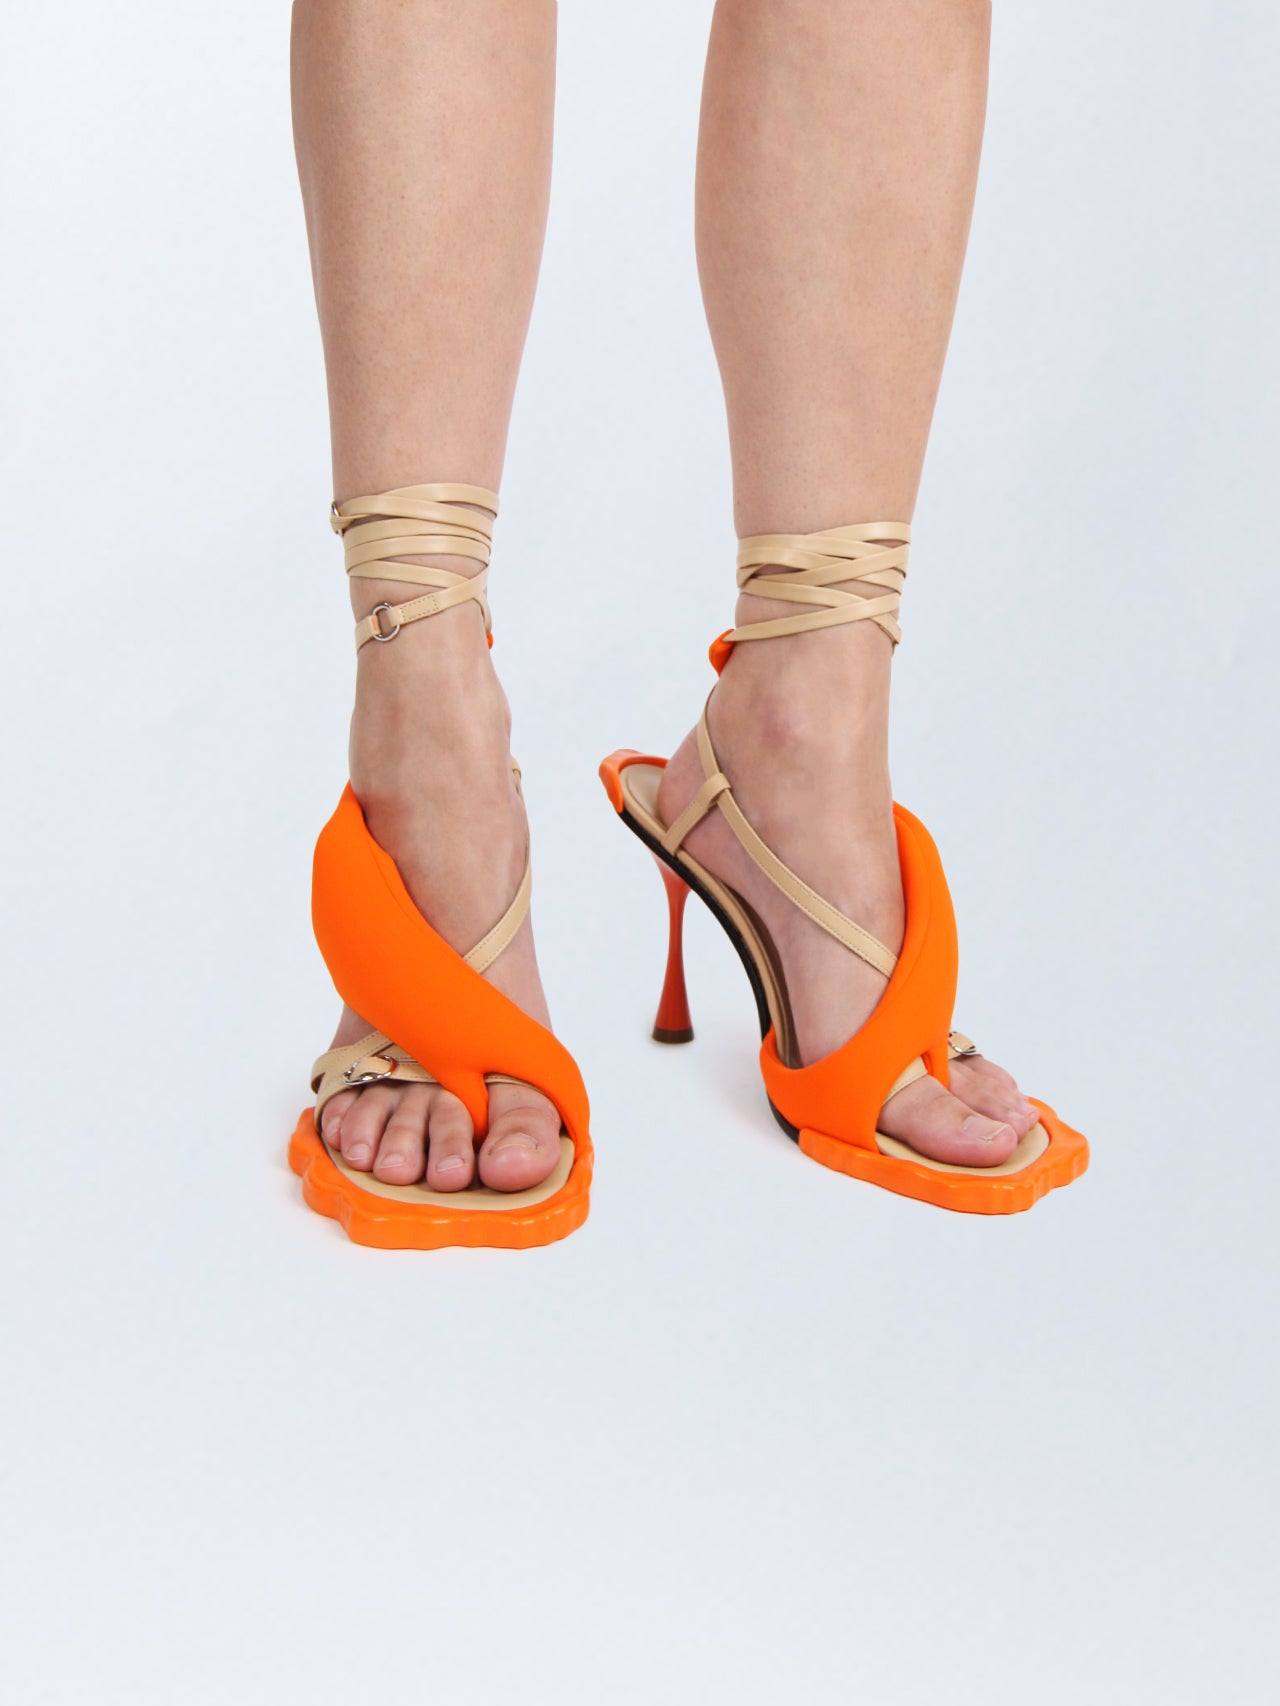 Dressberry Orange Heels - Buy Dressberry Orange Heels online in India